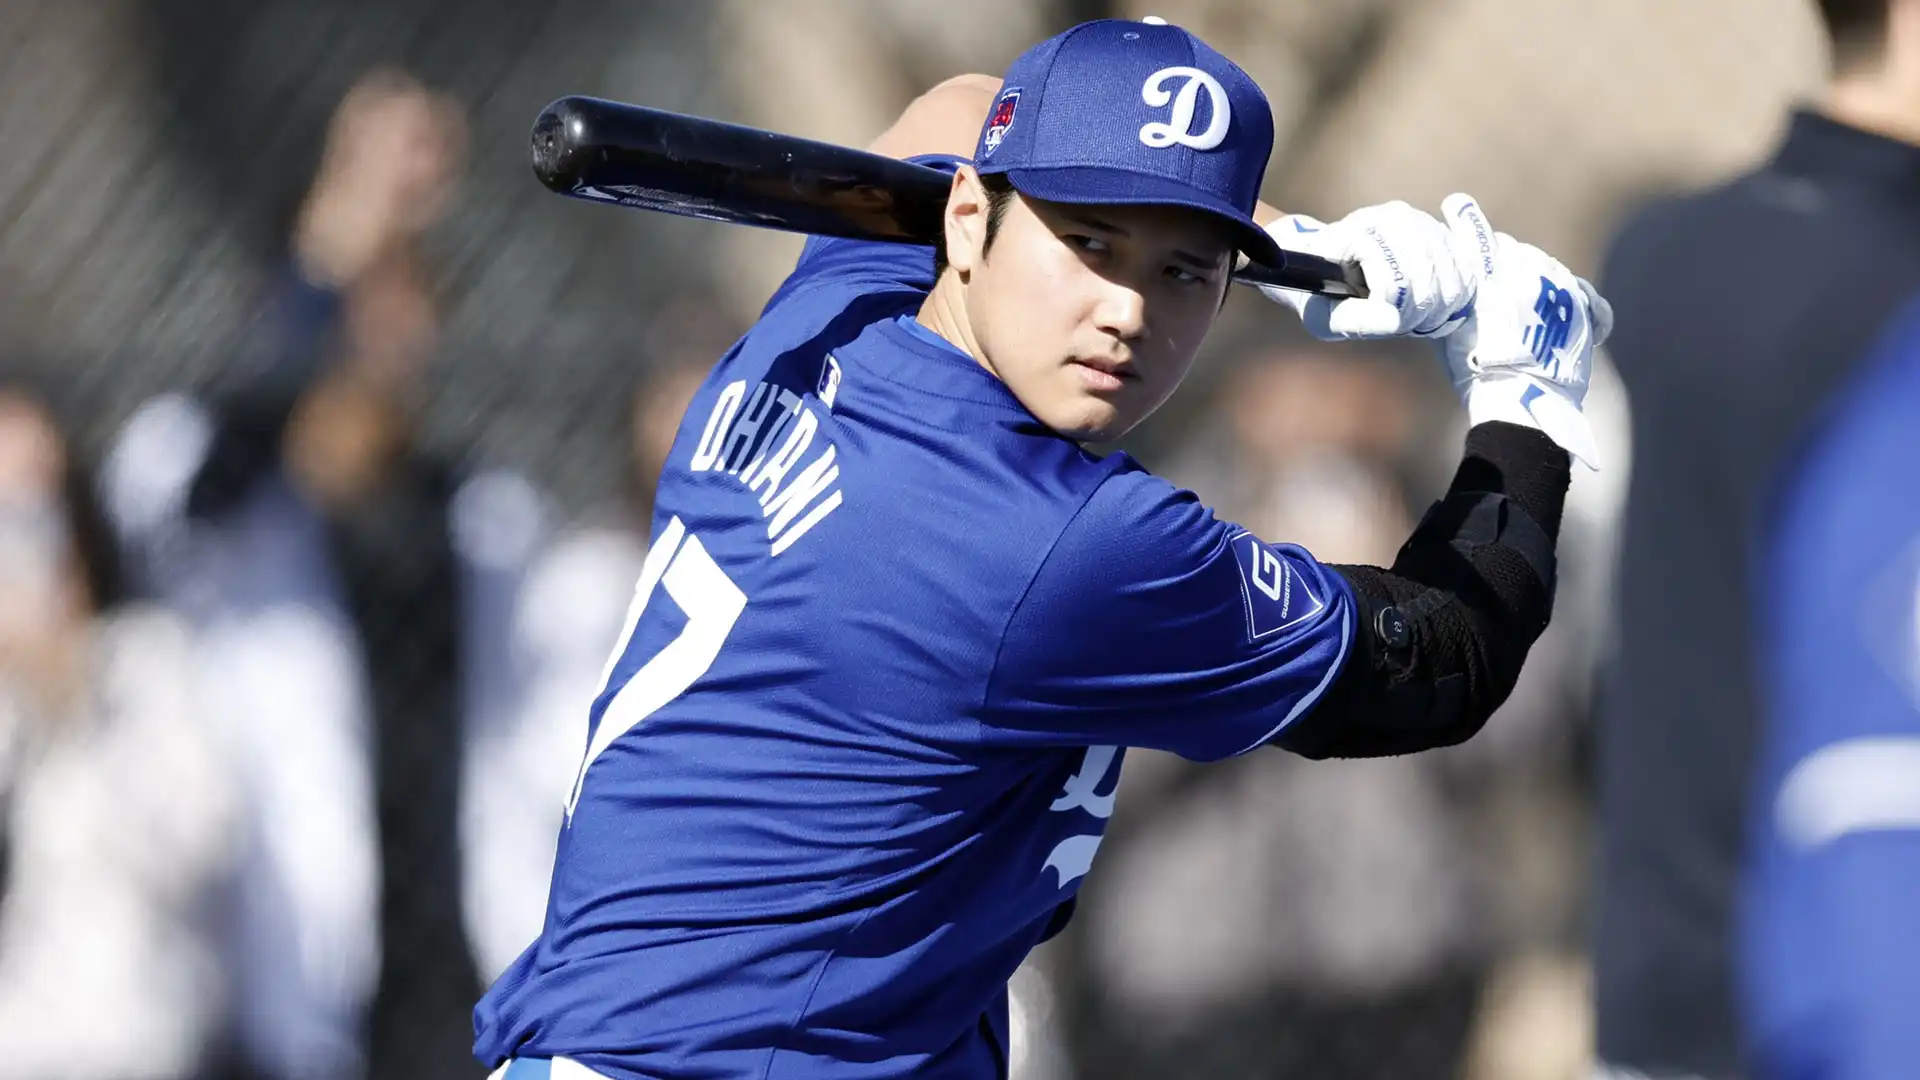 1 Shohei Ohtani (Los Angeles Dodgers): stipendio $2M; sponsorizzazioni $65M. Totale: $67M